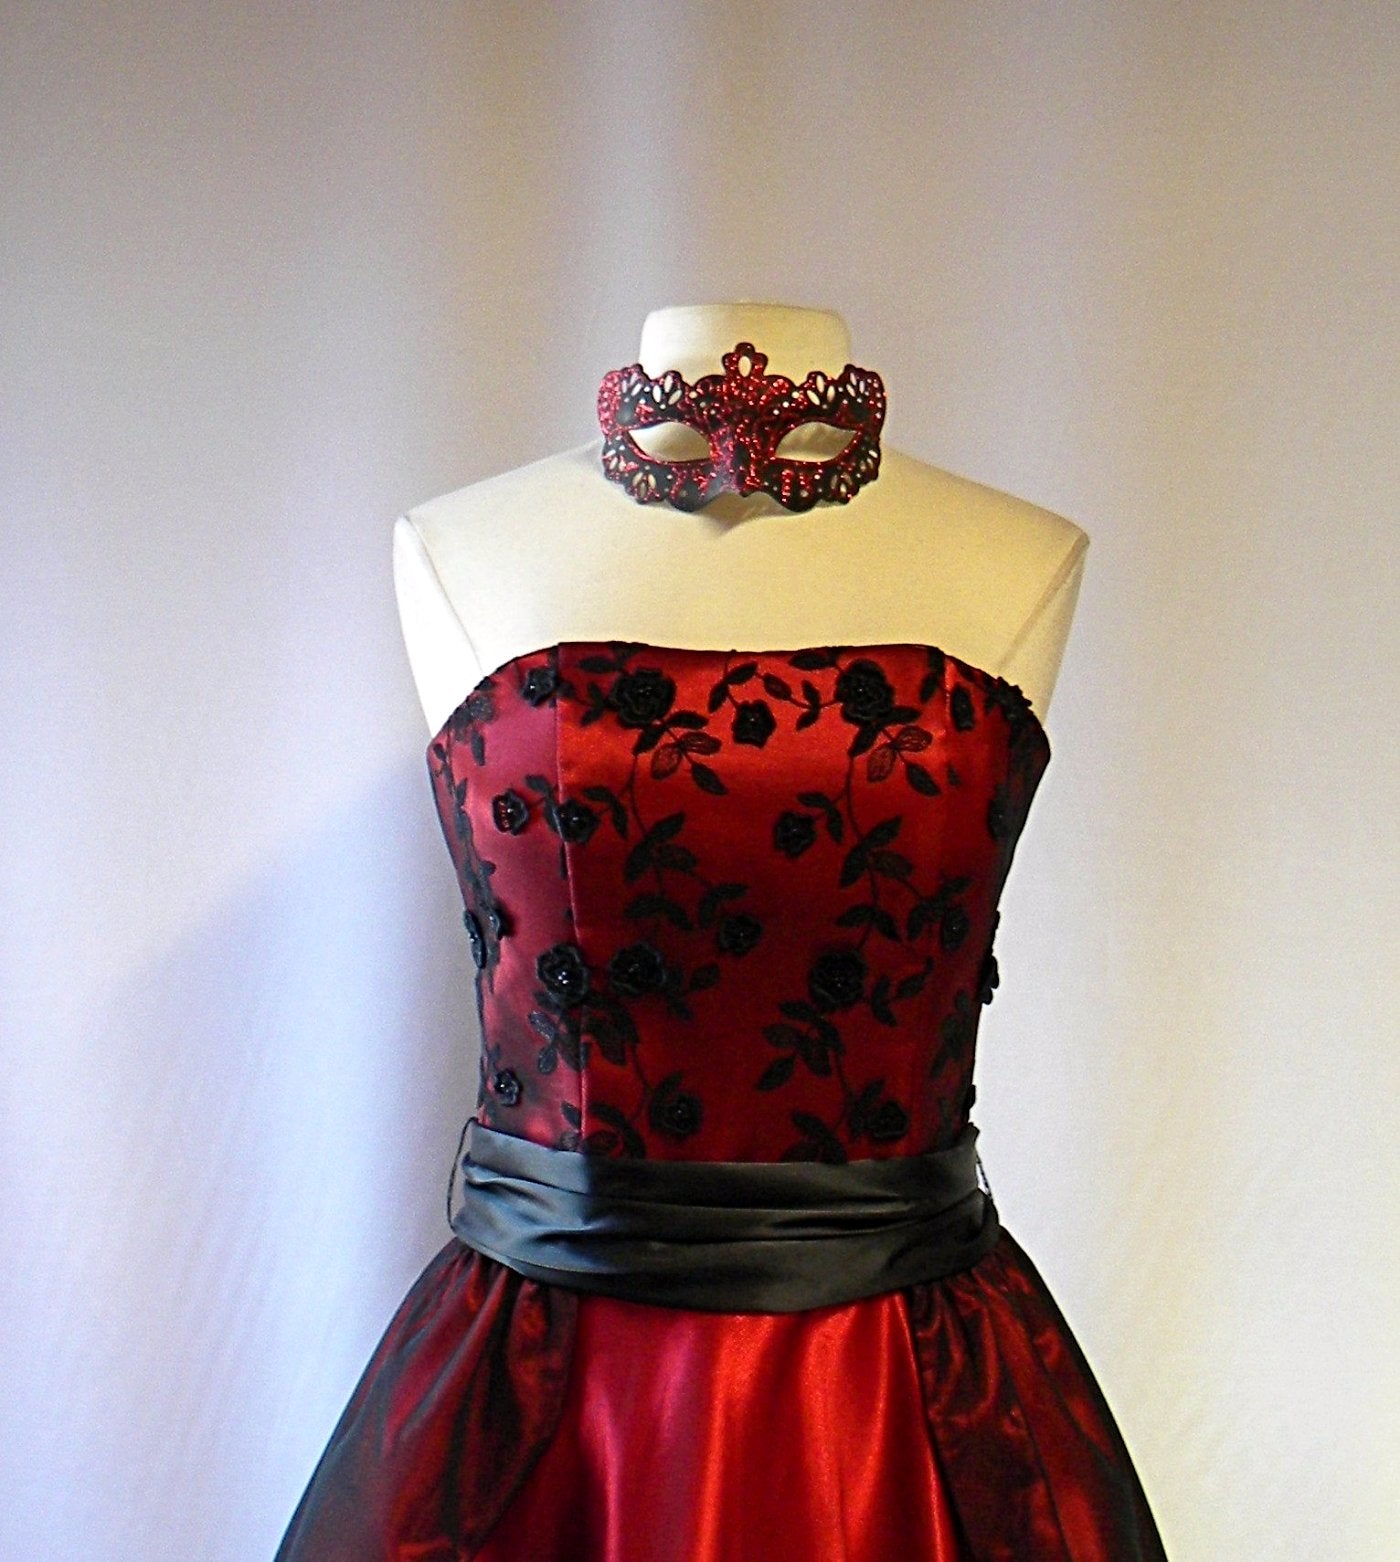 red masquerade dress